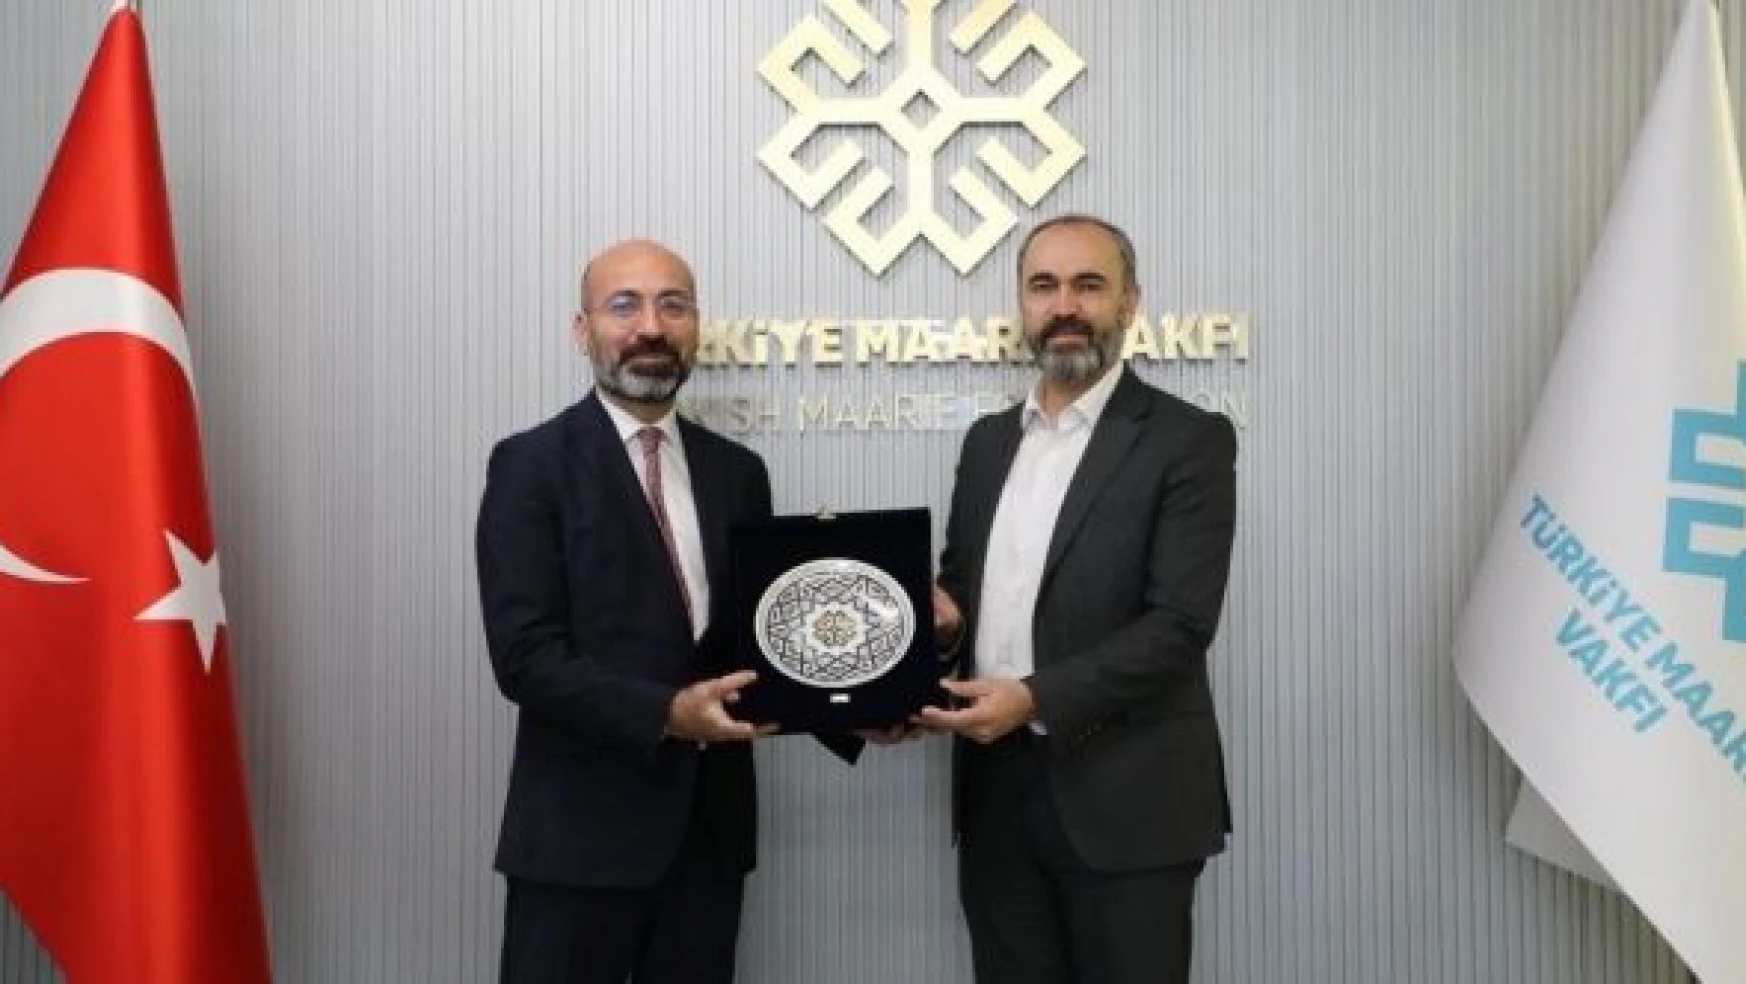 Bayburt Üniversitesi ile Türkiye Maarif Vakfı iş birliği protokolü imzaladı